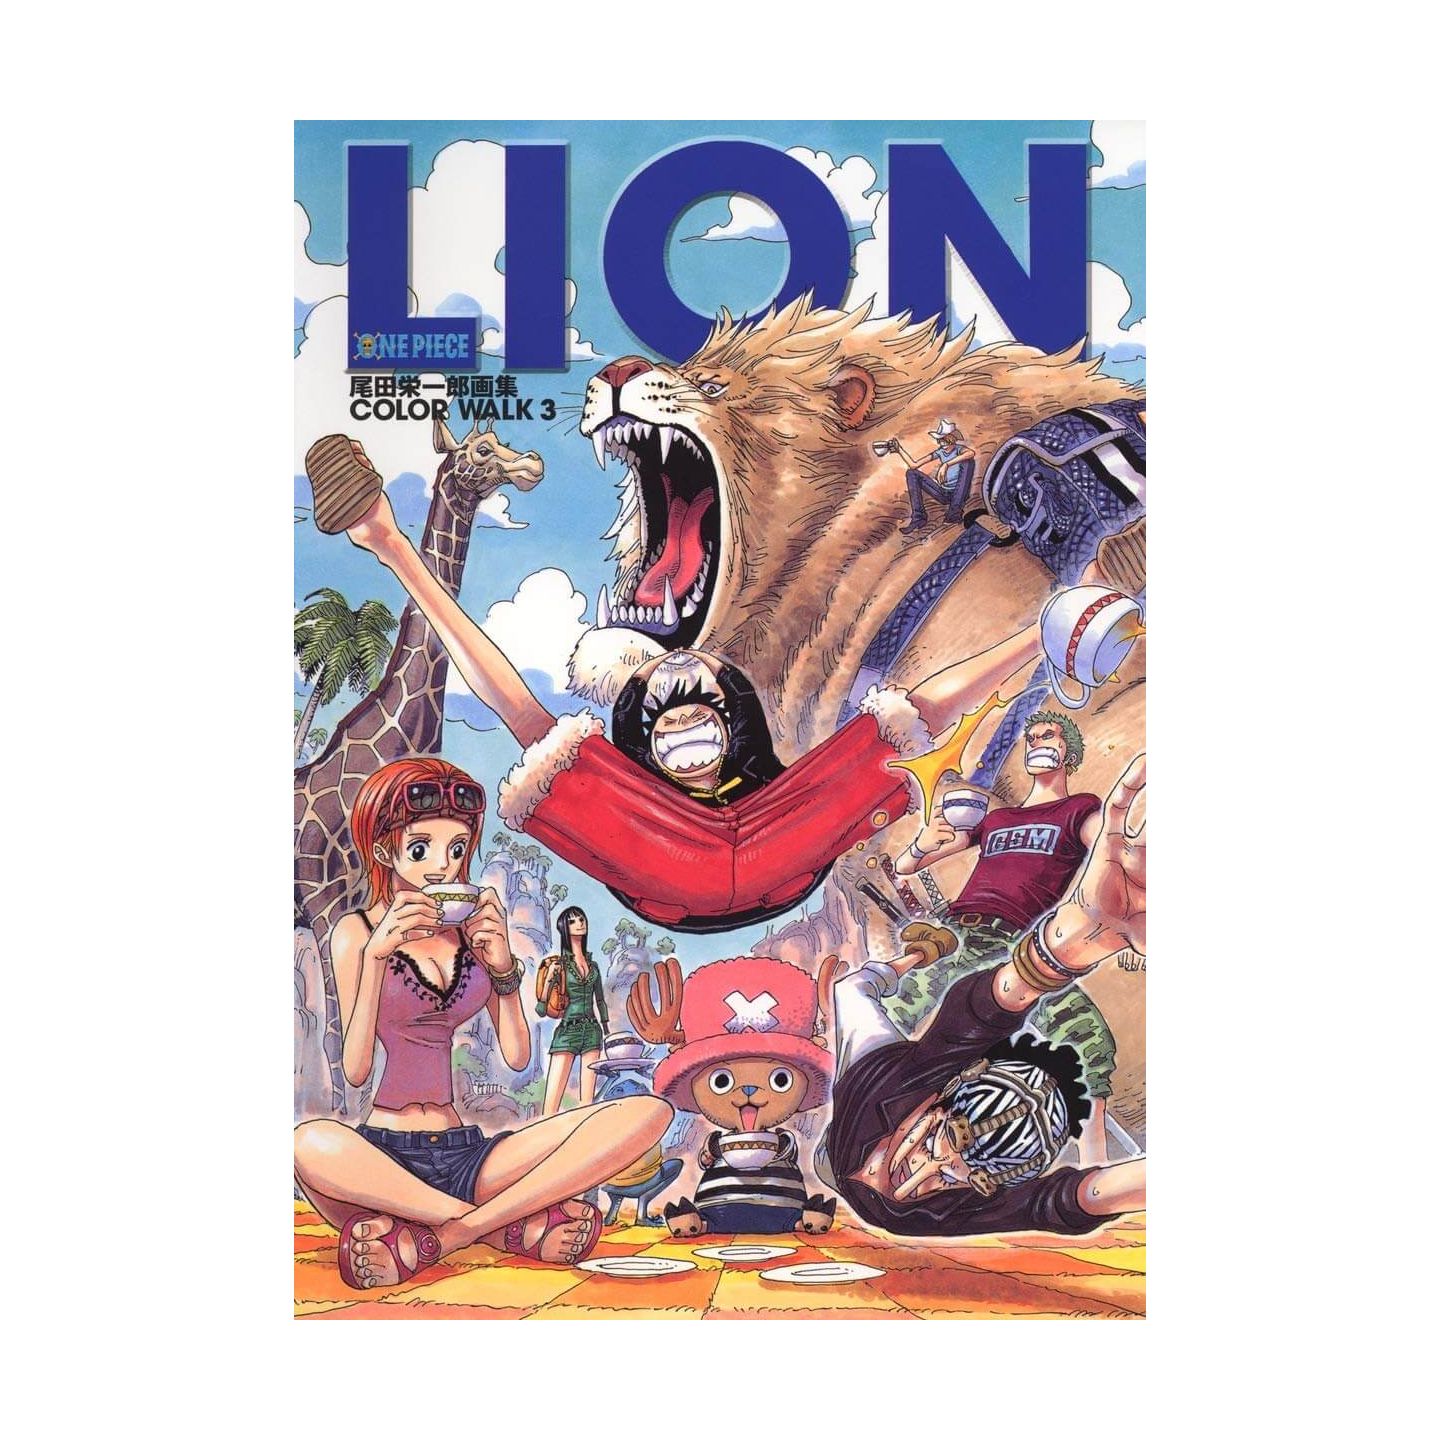 Onepieceイラスト集 Colorwalk 3 Lion ジャンプコミックス デラックス